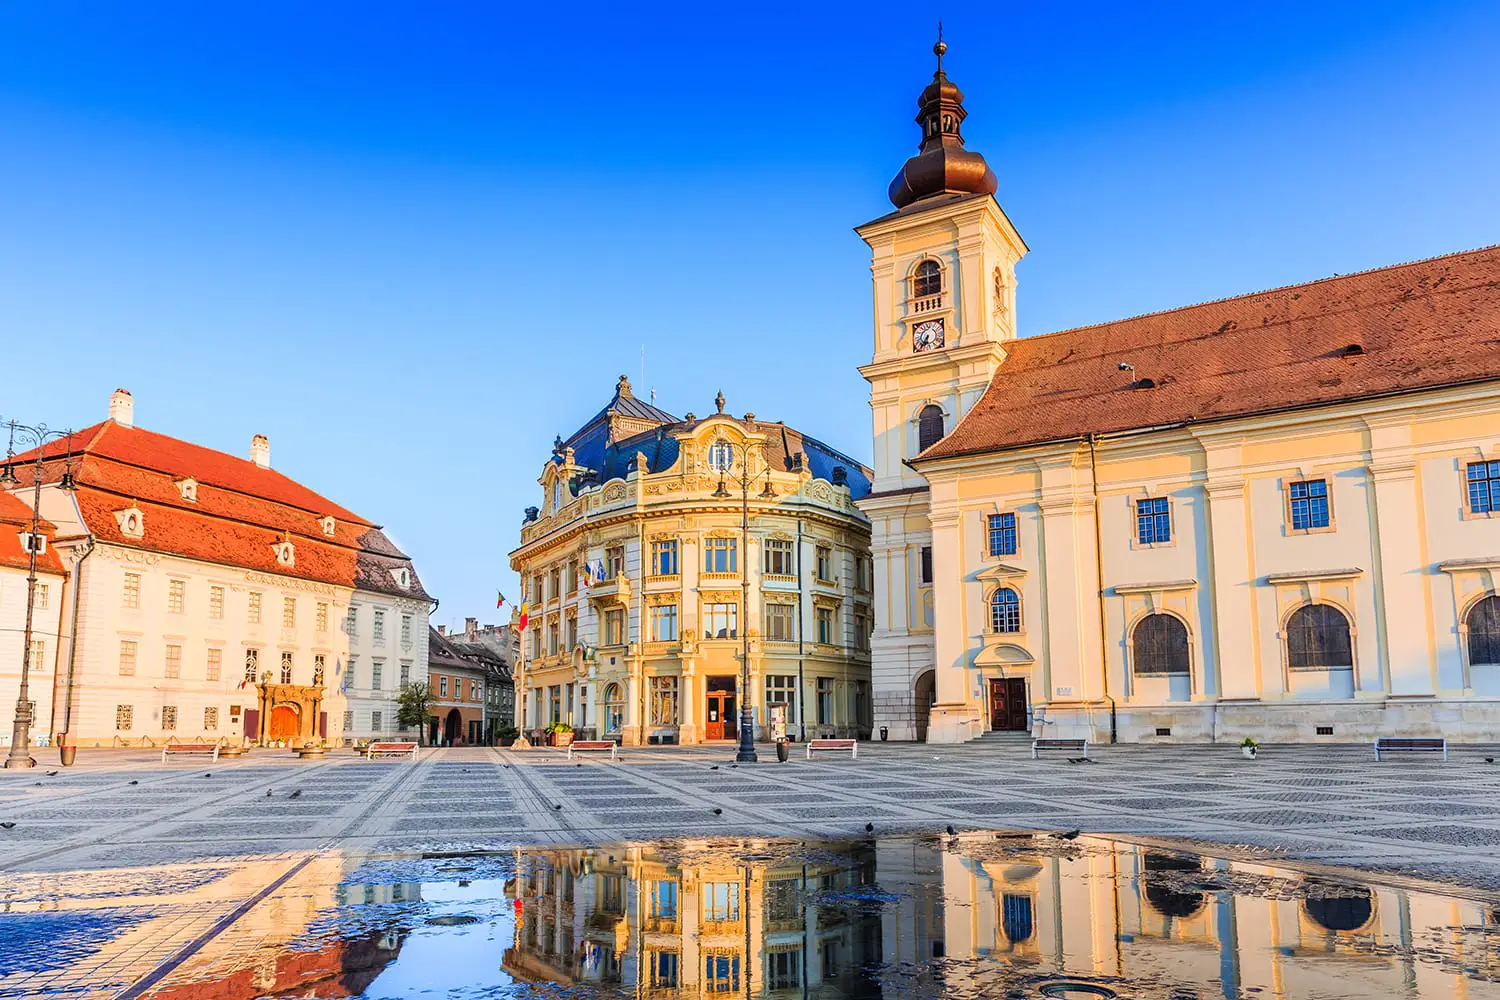 Δημαρχείο και παλάτι Brukenthal στο Sibiu, Ρουμανία